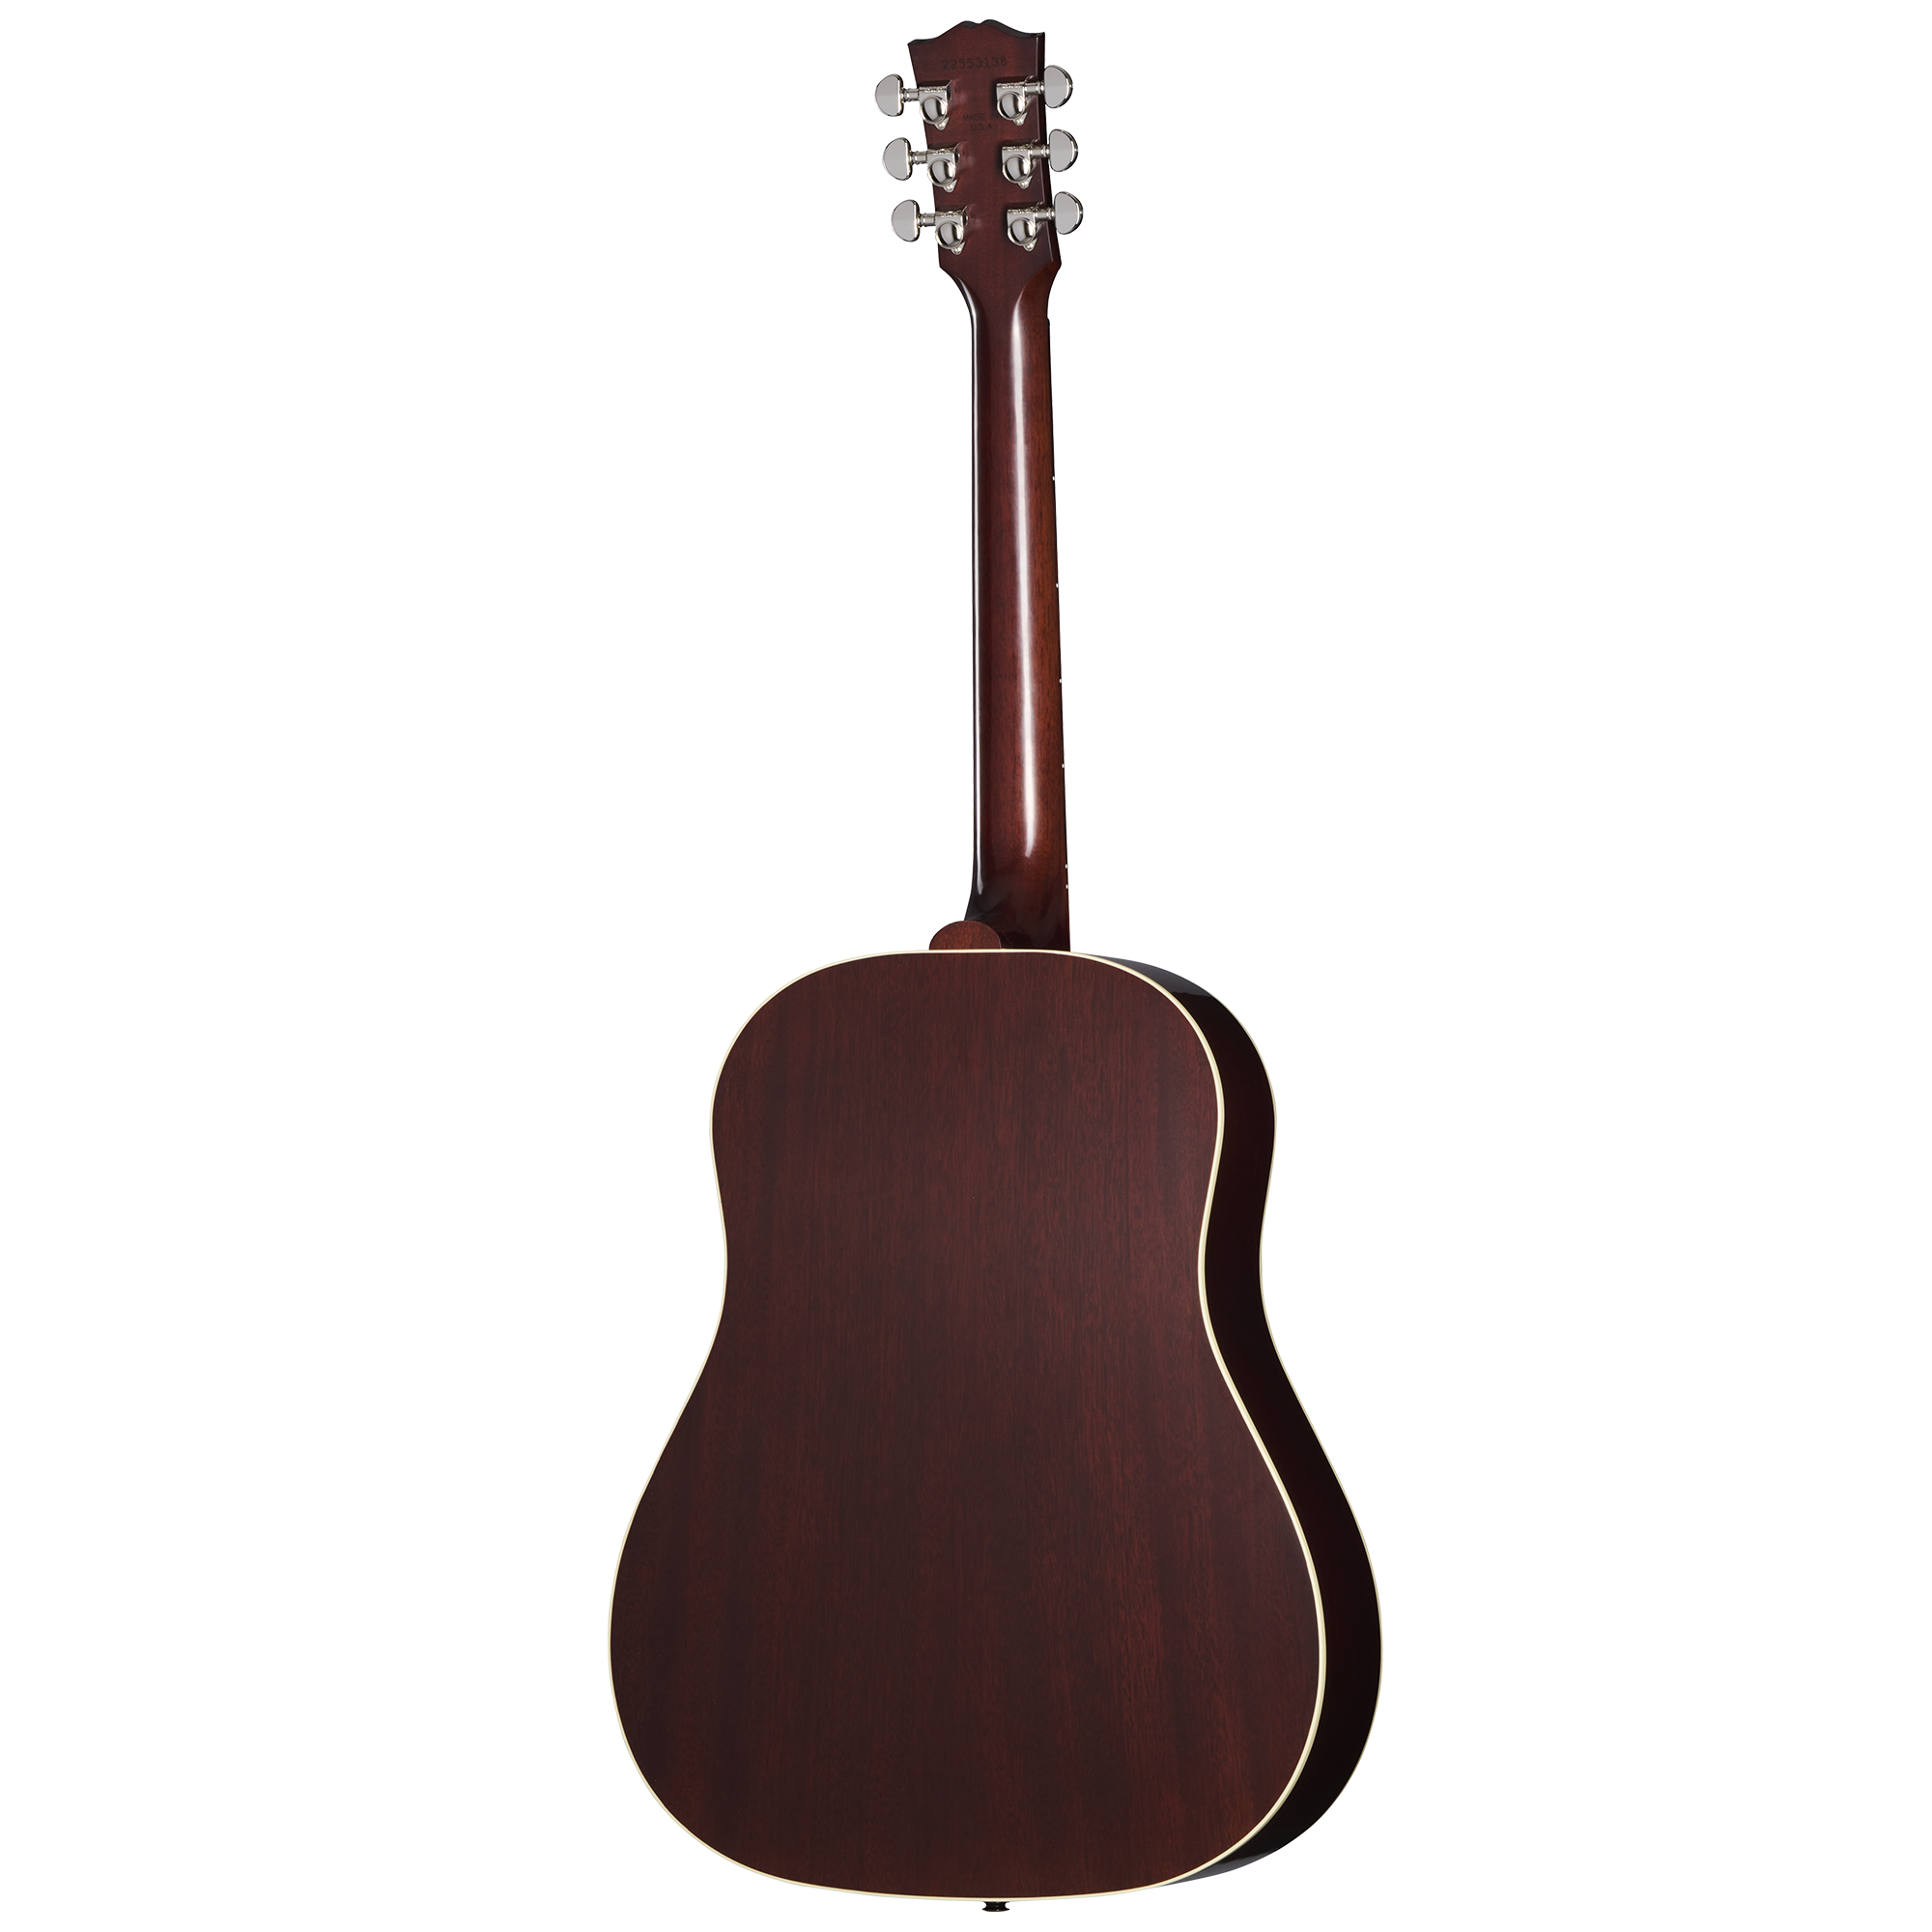 J-45 Standard | Gibson